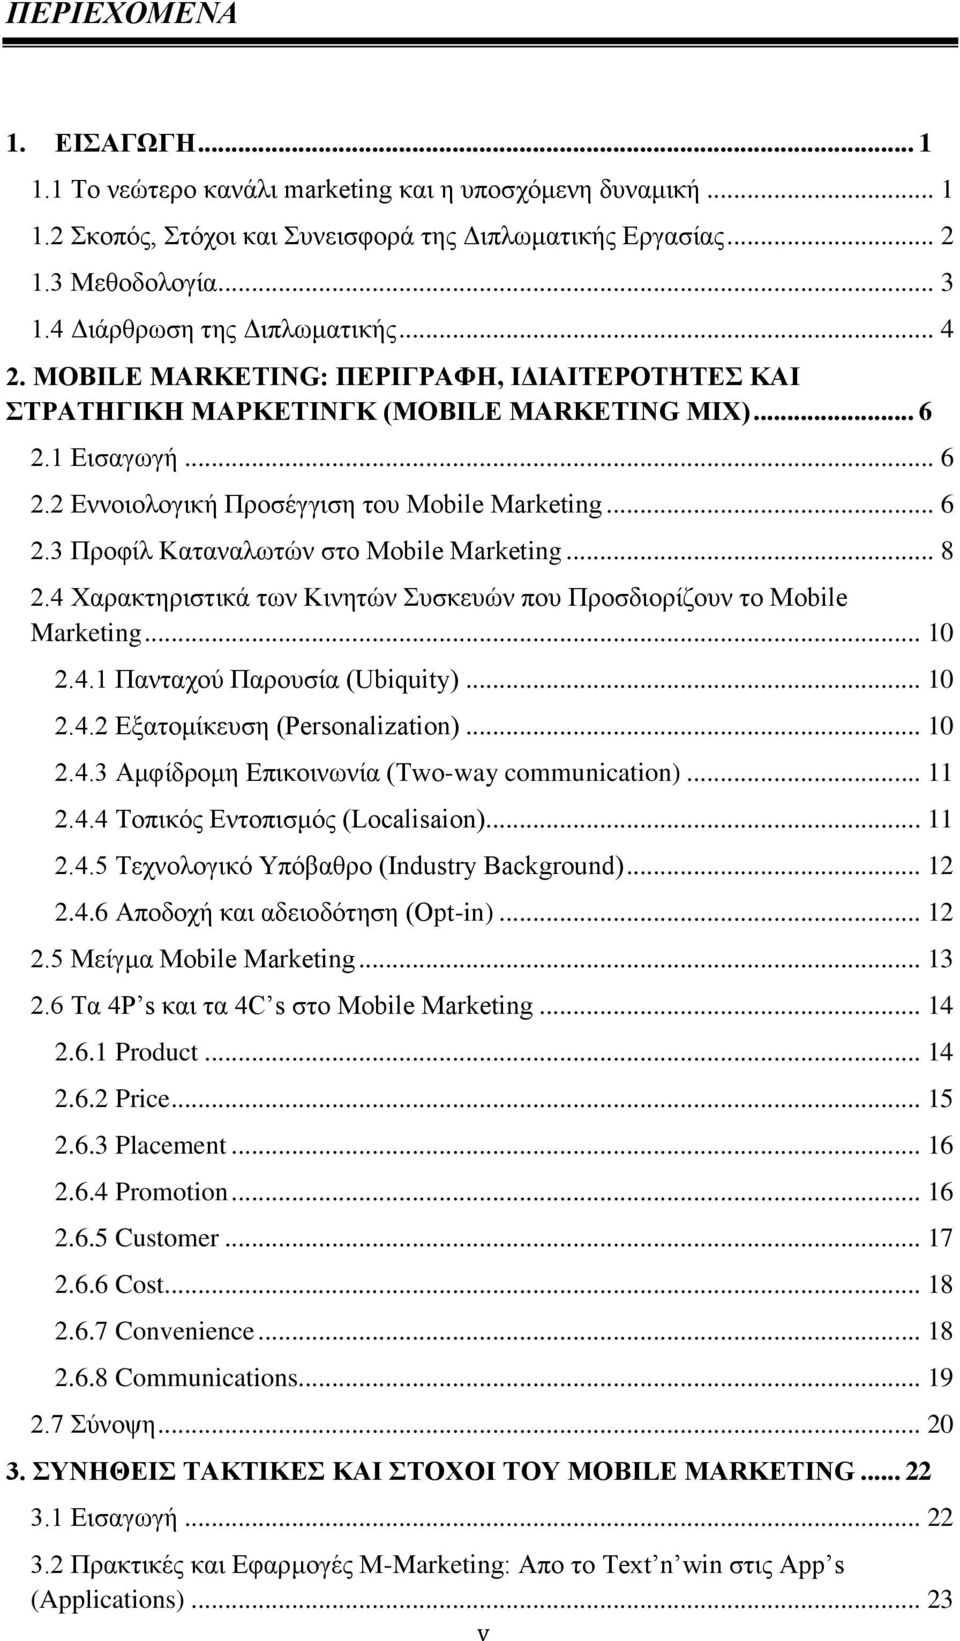 .. 6 2.3 Προφίλ Καταναλωτών στο Mobile Marketing... 8 2.4 Χαρακτηριστικά των Κινητών Συσκευών που Προσδιορίζουν το Mobile Marketing... 10 2.4.1 Πανταχού Παρουσία (Ubiquity)... 10 2.4.2 Εξατομίκευση (Personalization).